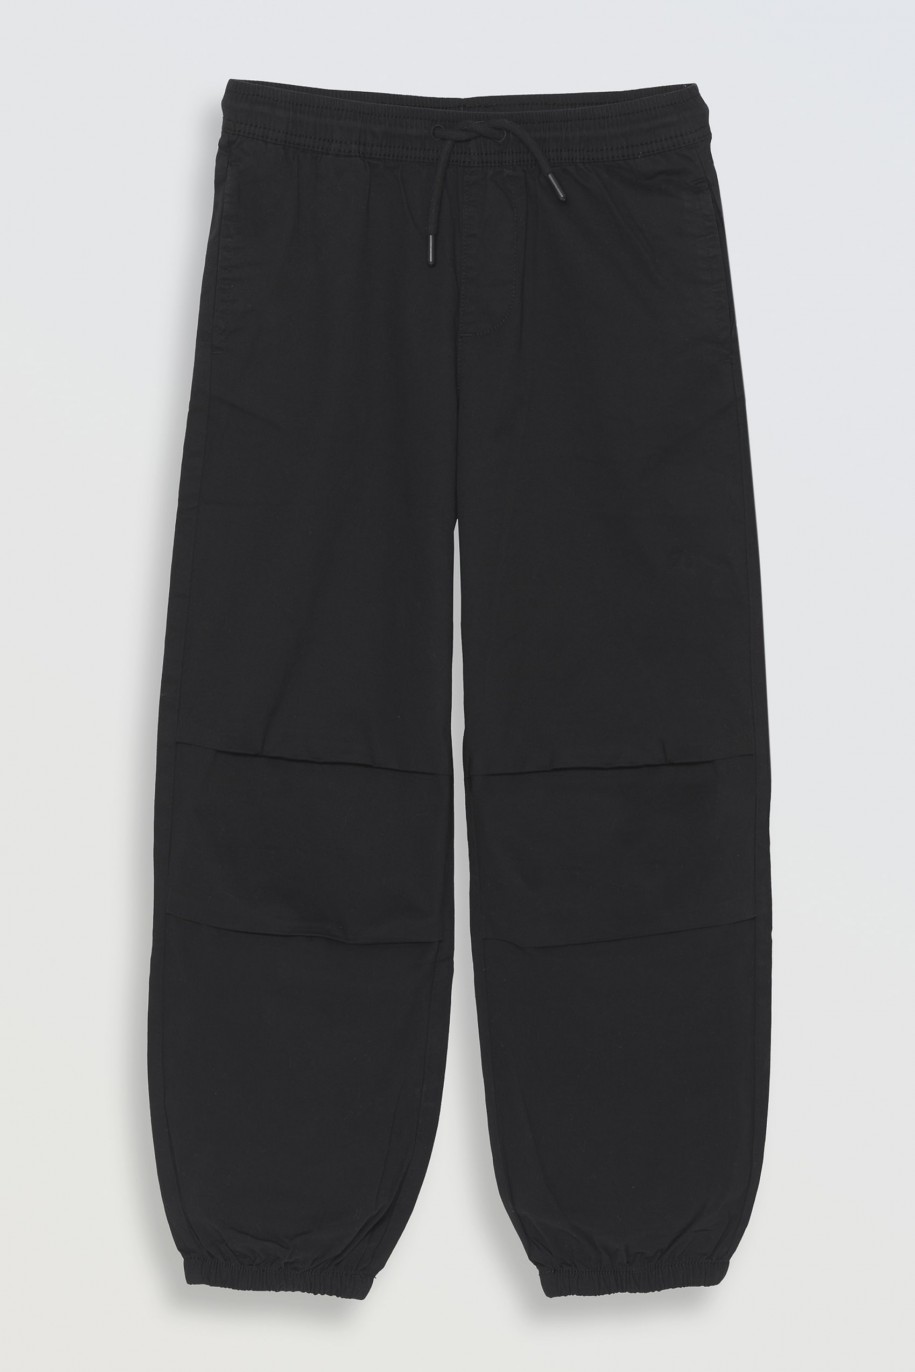 Czarne spodnie typu parachute z zaszewkami na nogawkach - 46250